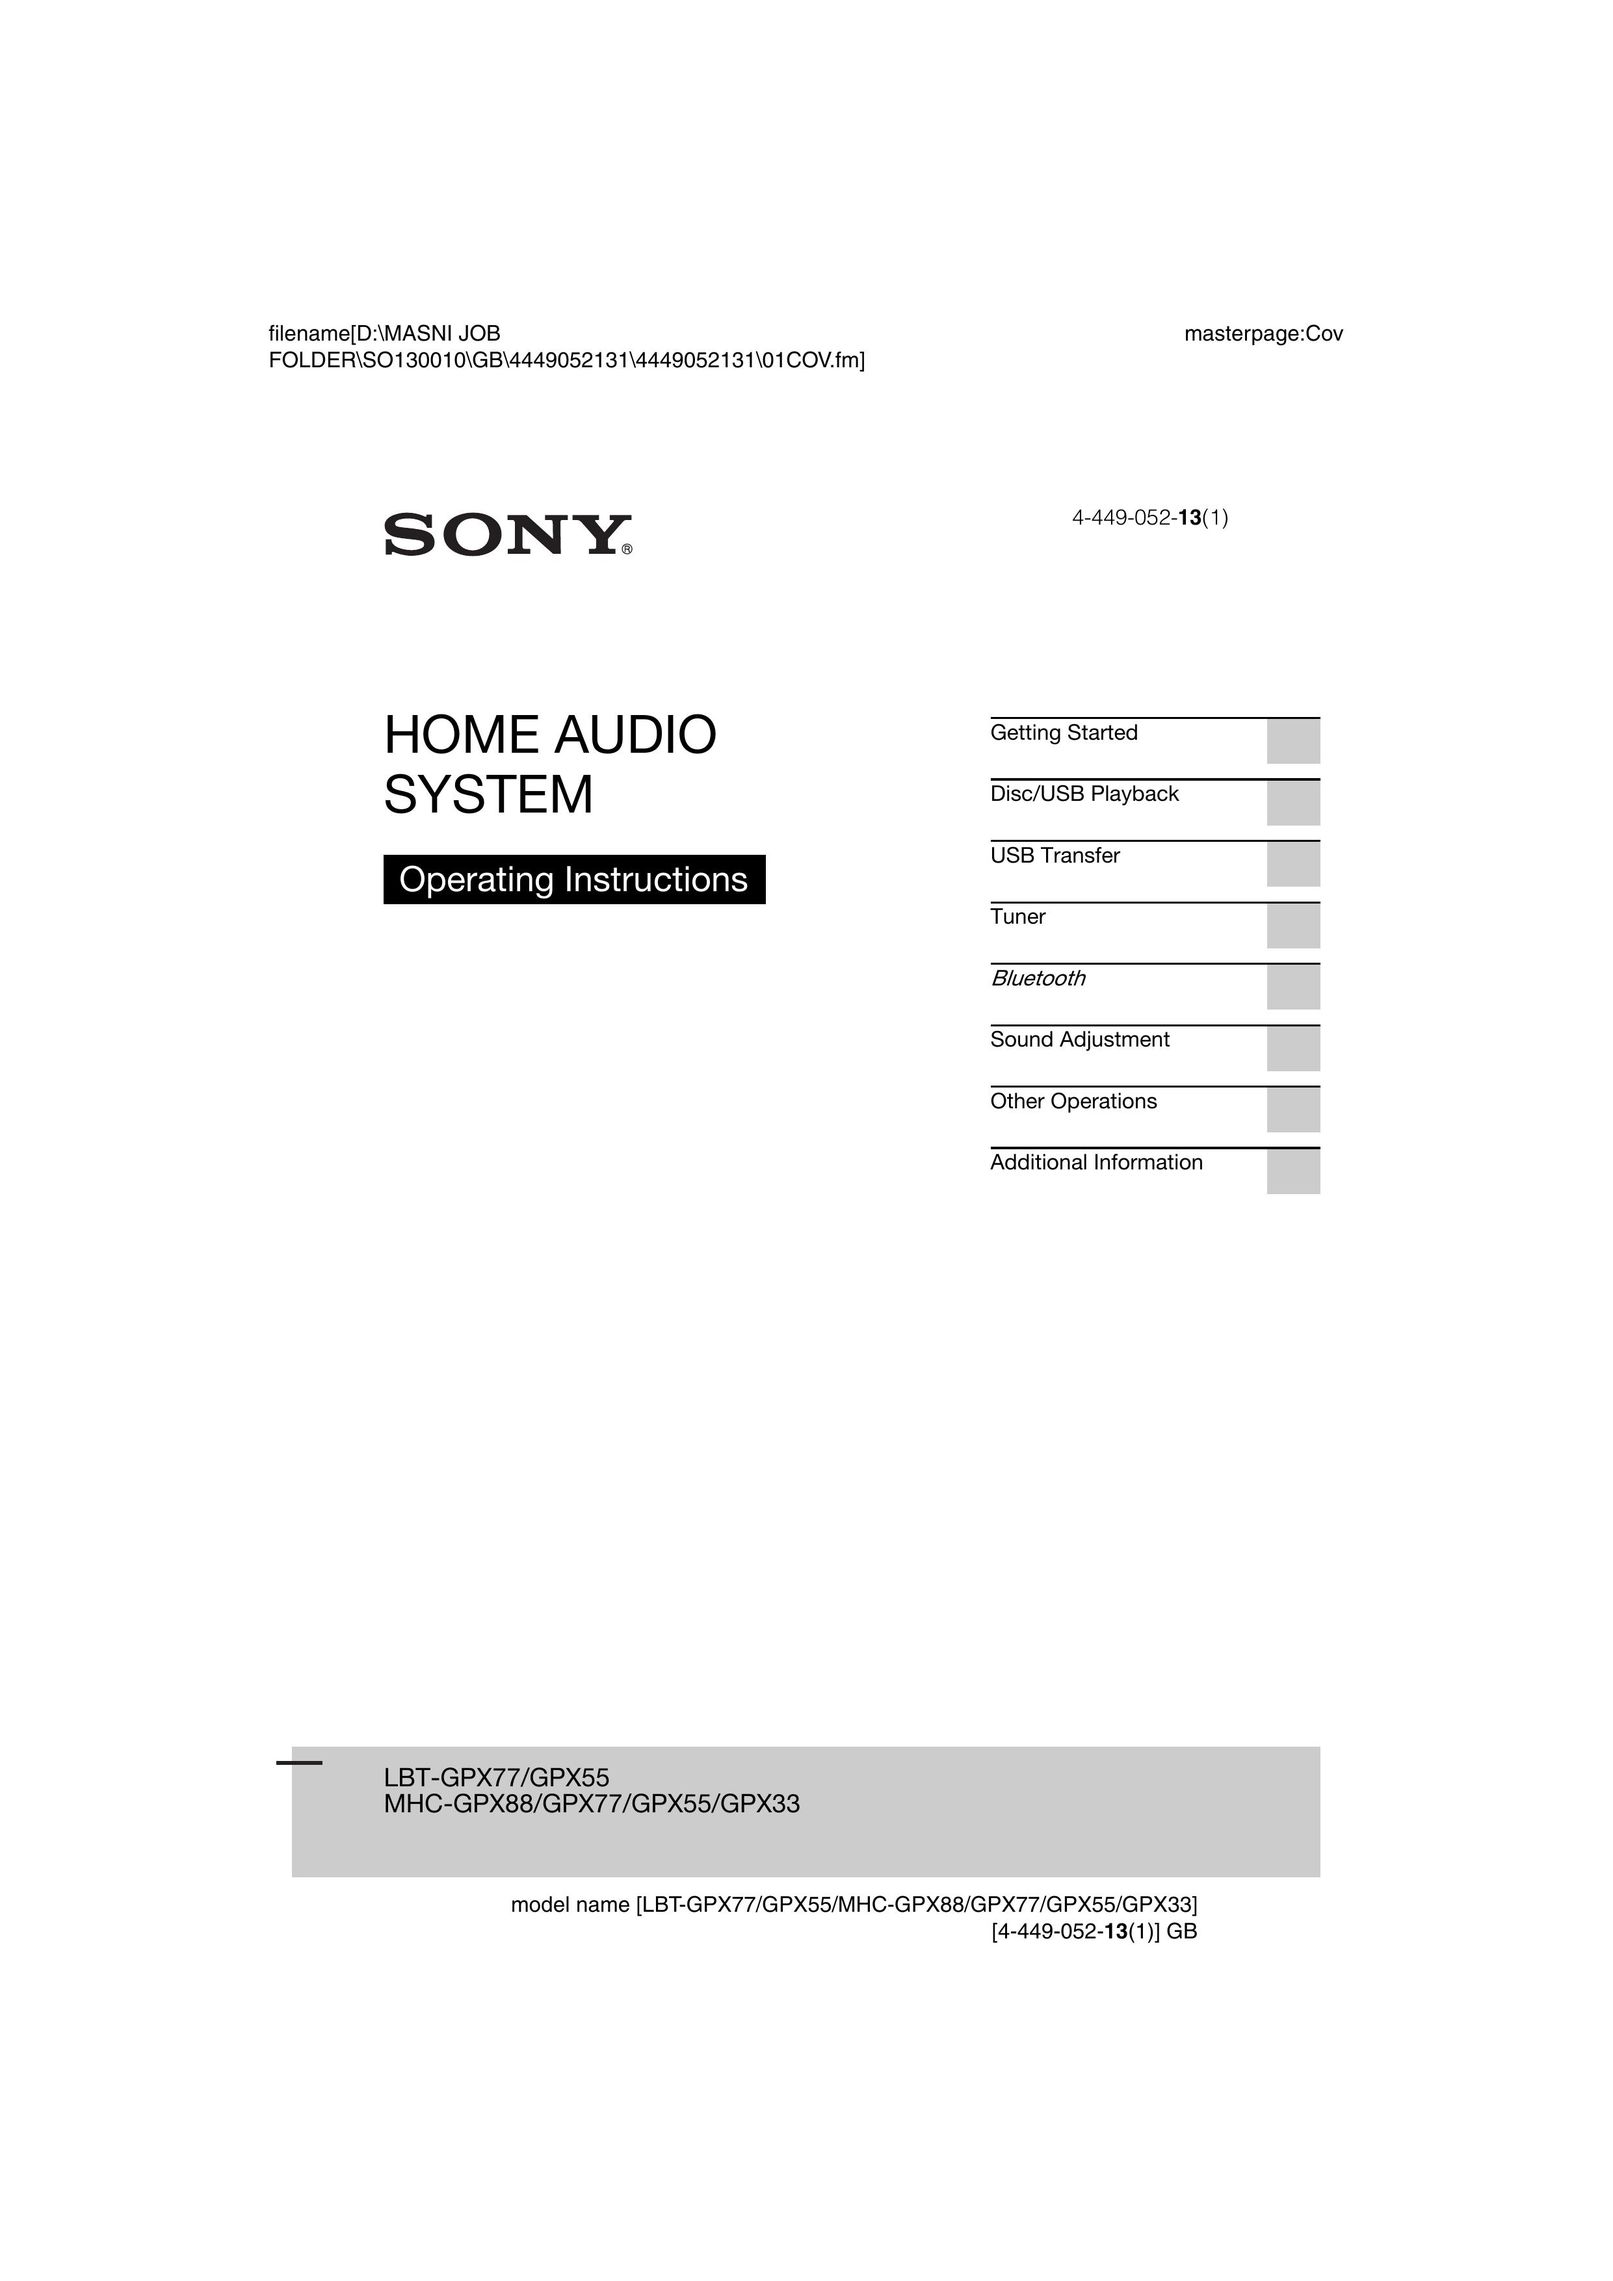 Sony LBTGPX55 Speaker System User Manual